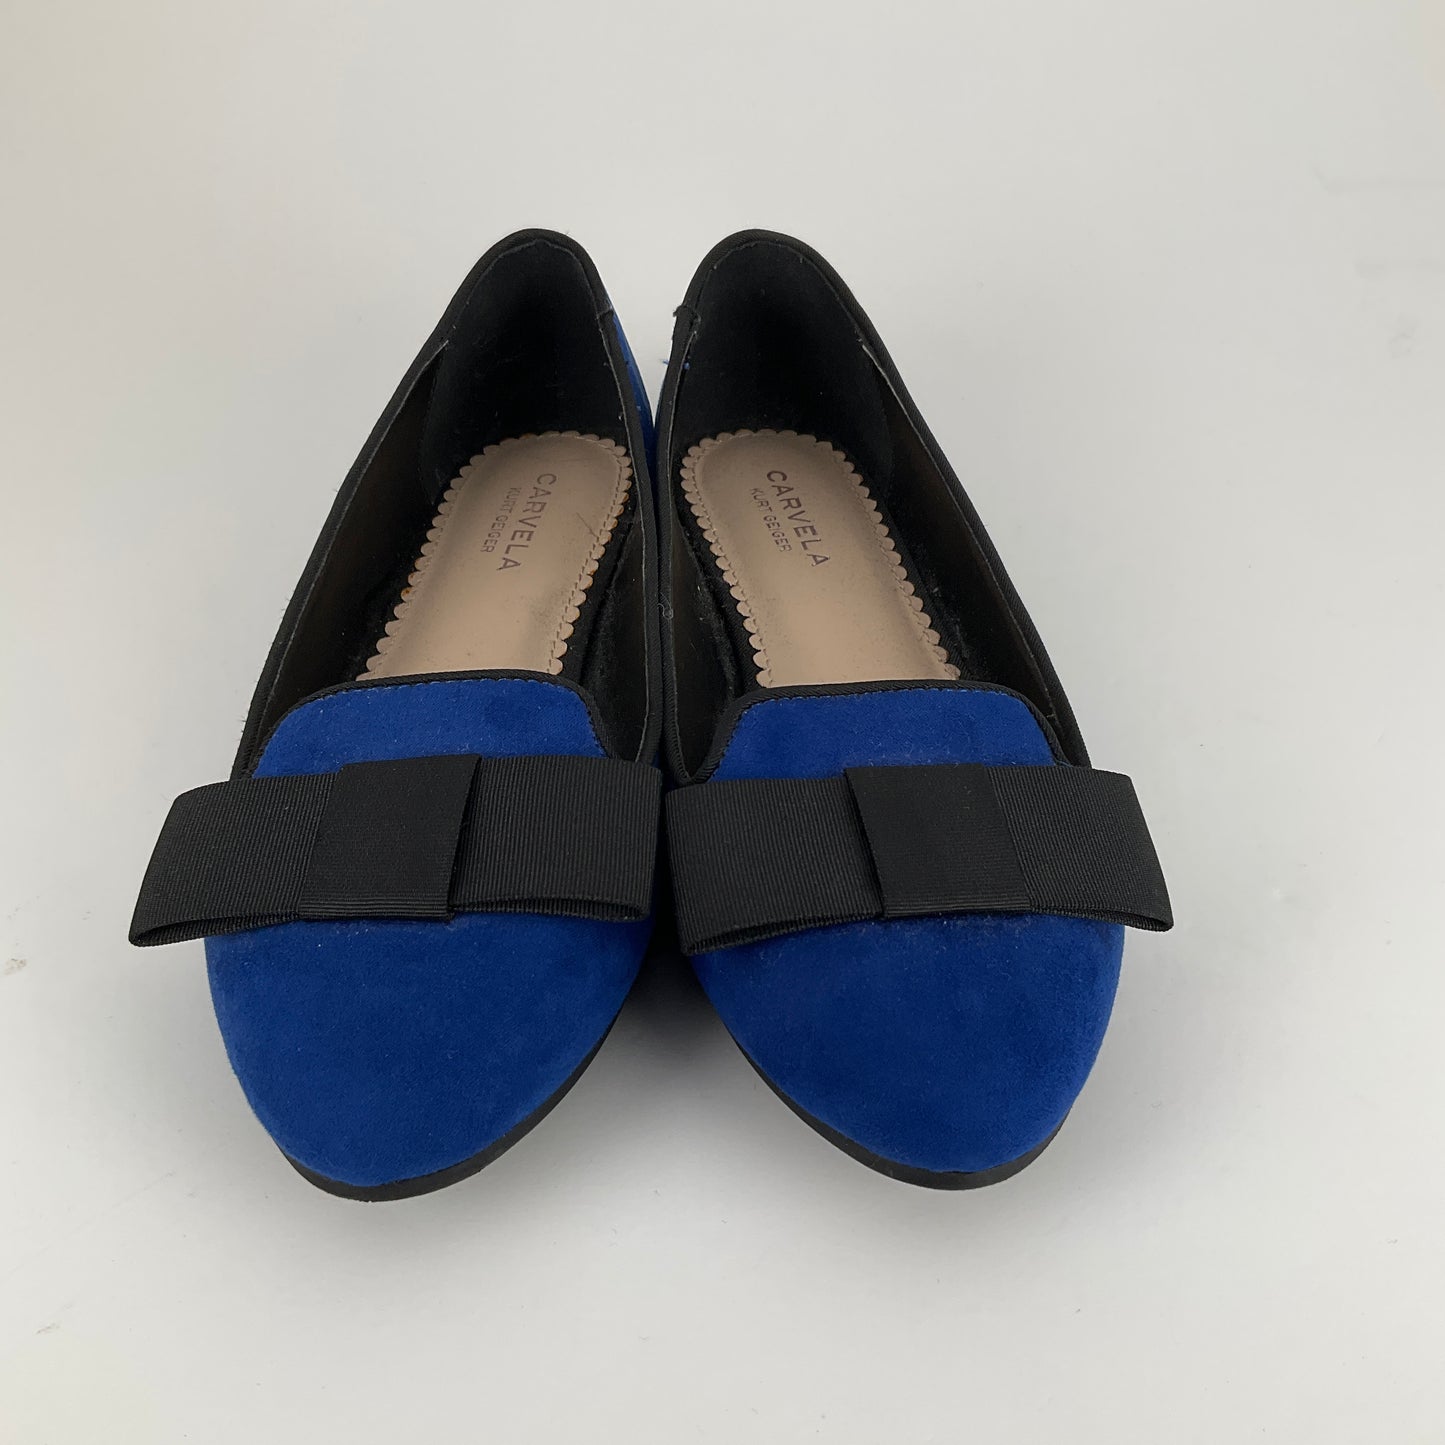 Carvela - Blue Slides - Size 39